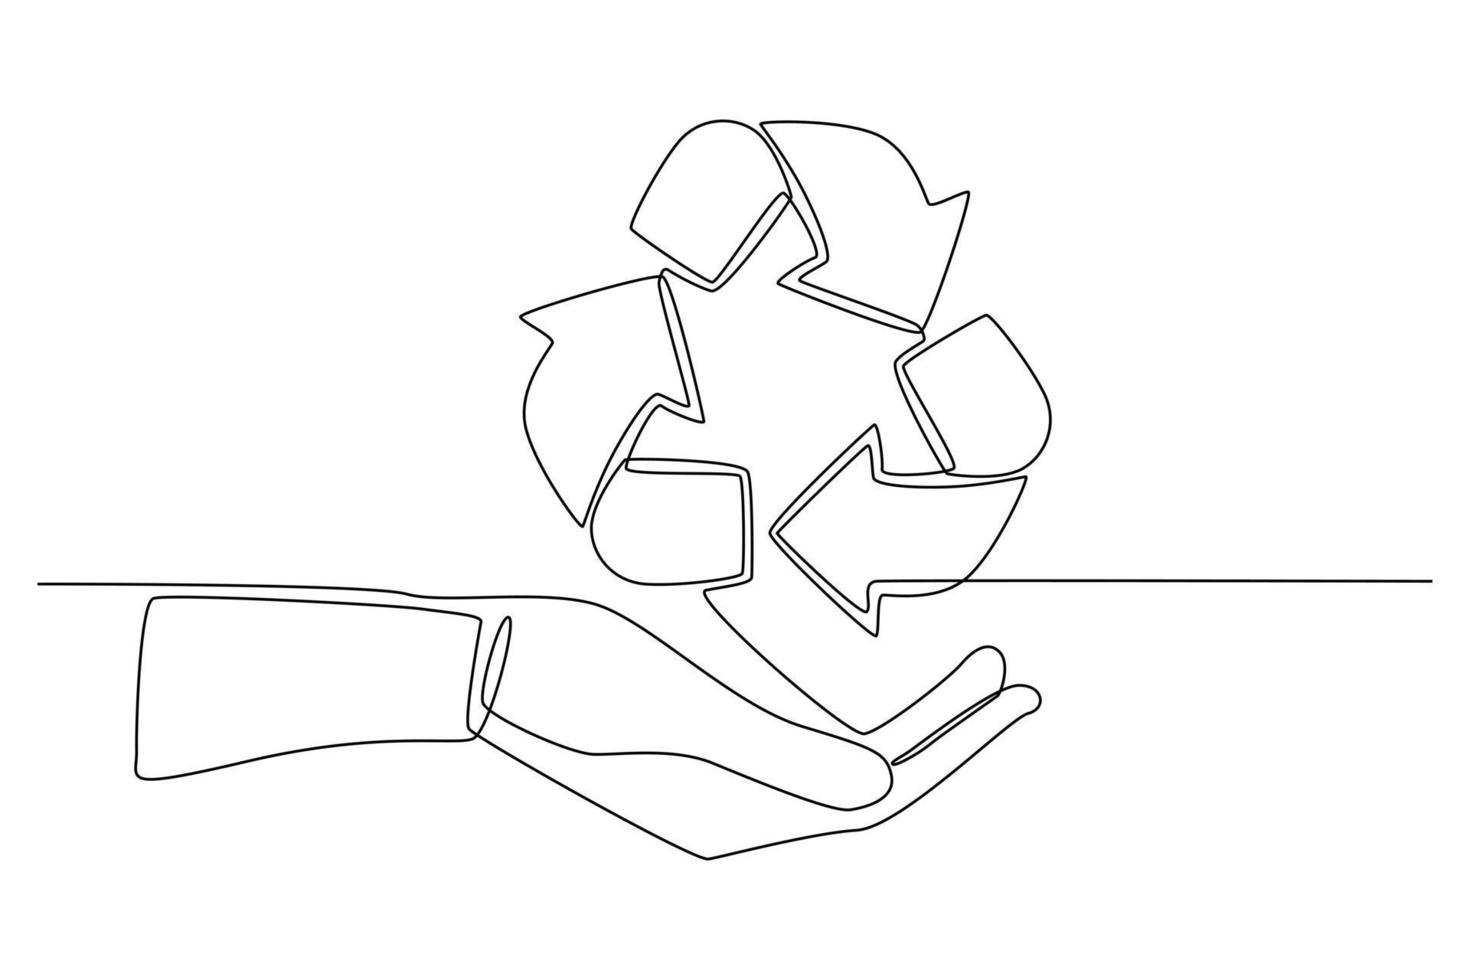 continu een lijntekening recycle pictogram op de hand. ecologisch verpakkingsconcept. enkele lijn tekenen ontwerp vector grafische afbeelding.